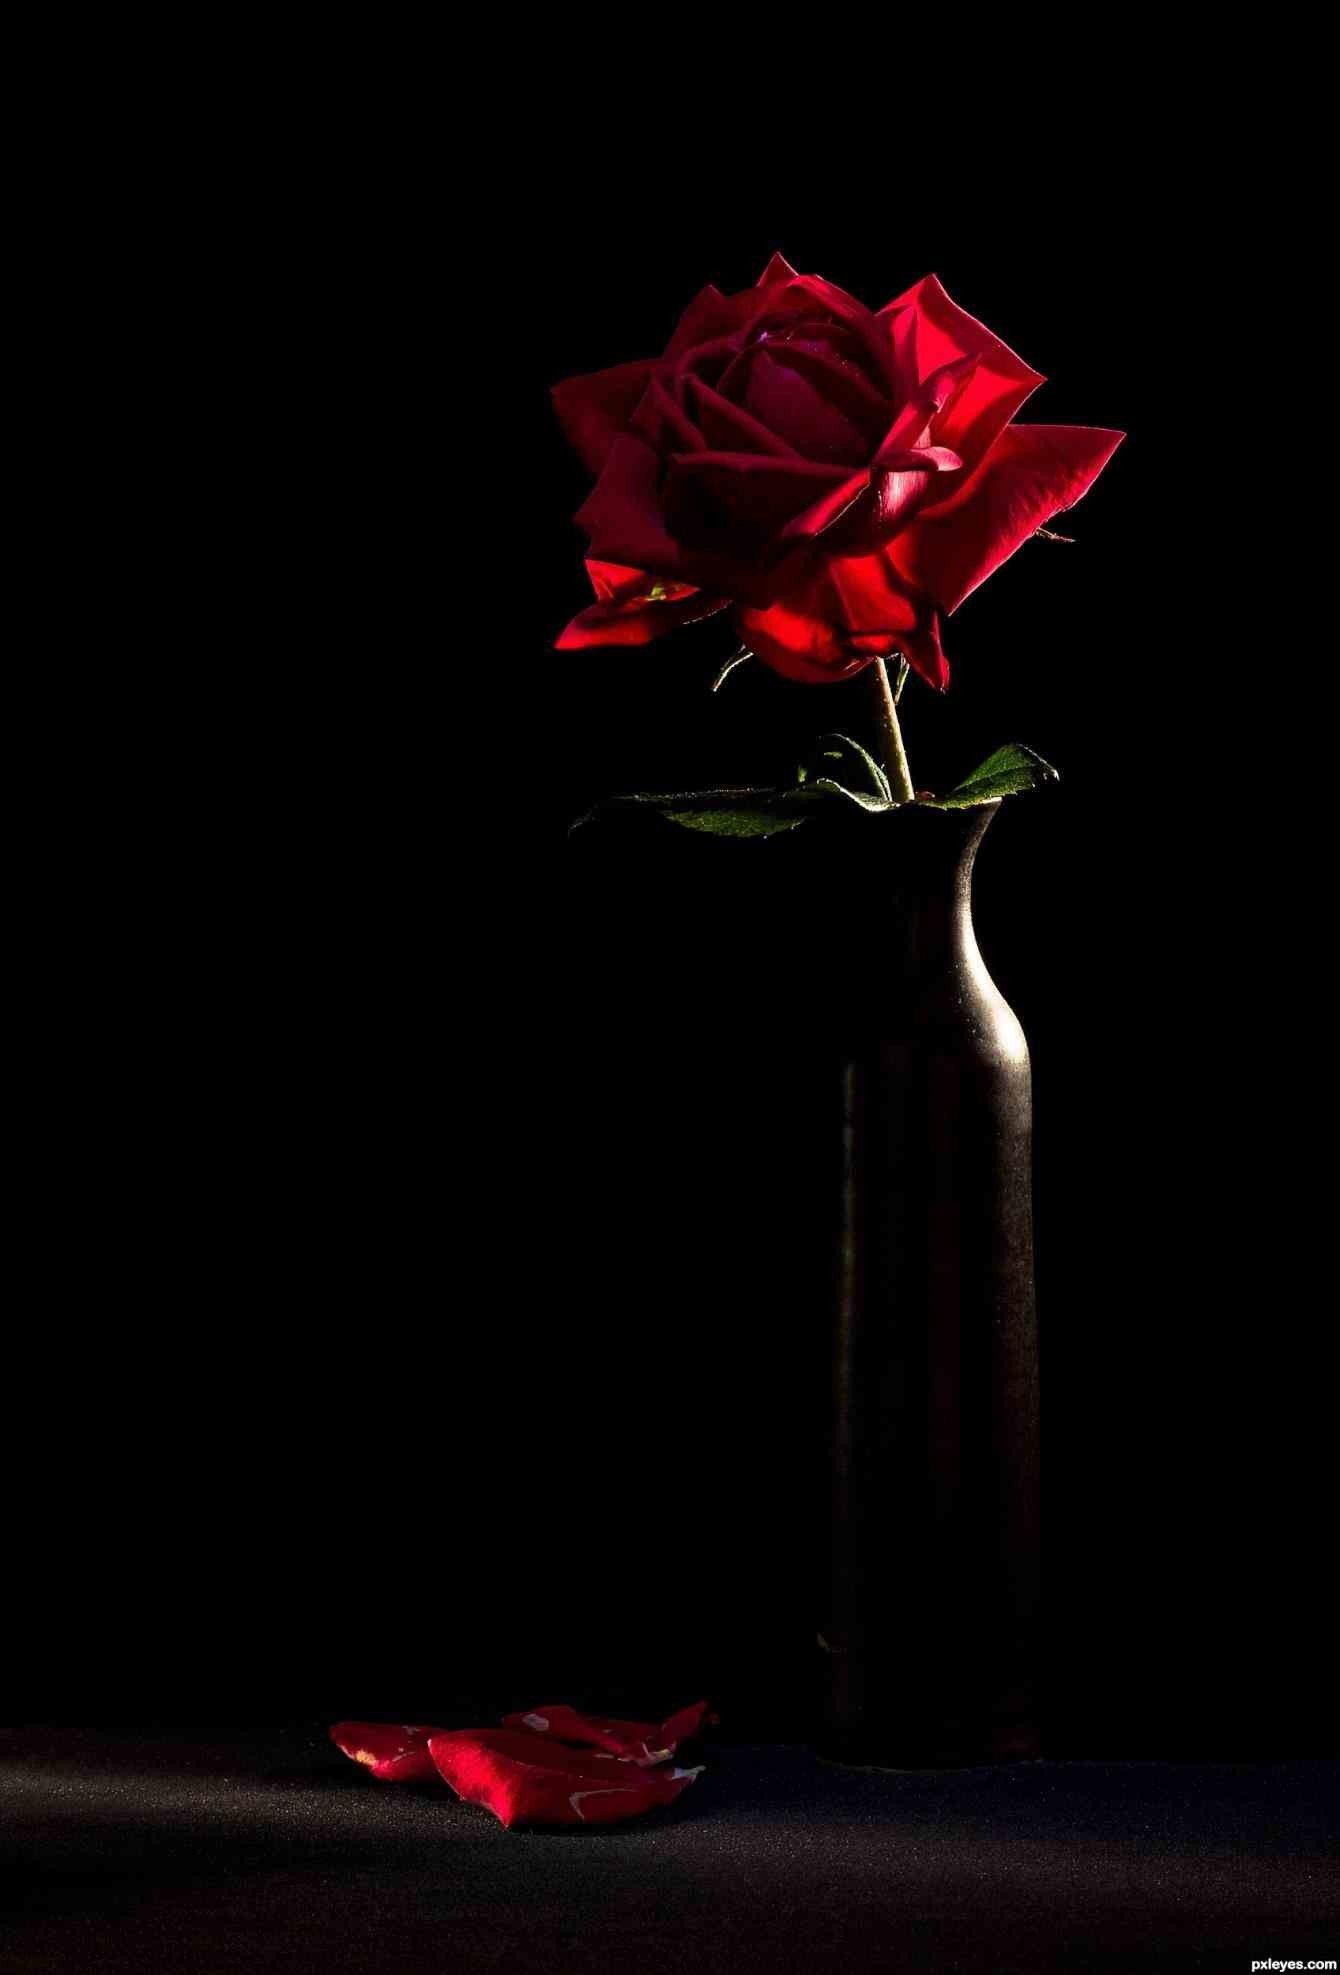 Black and Red Rose Wallpapers - Top Những Hình Ảnh Đẹp